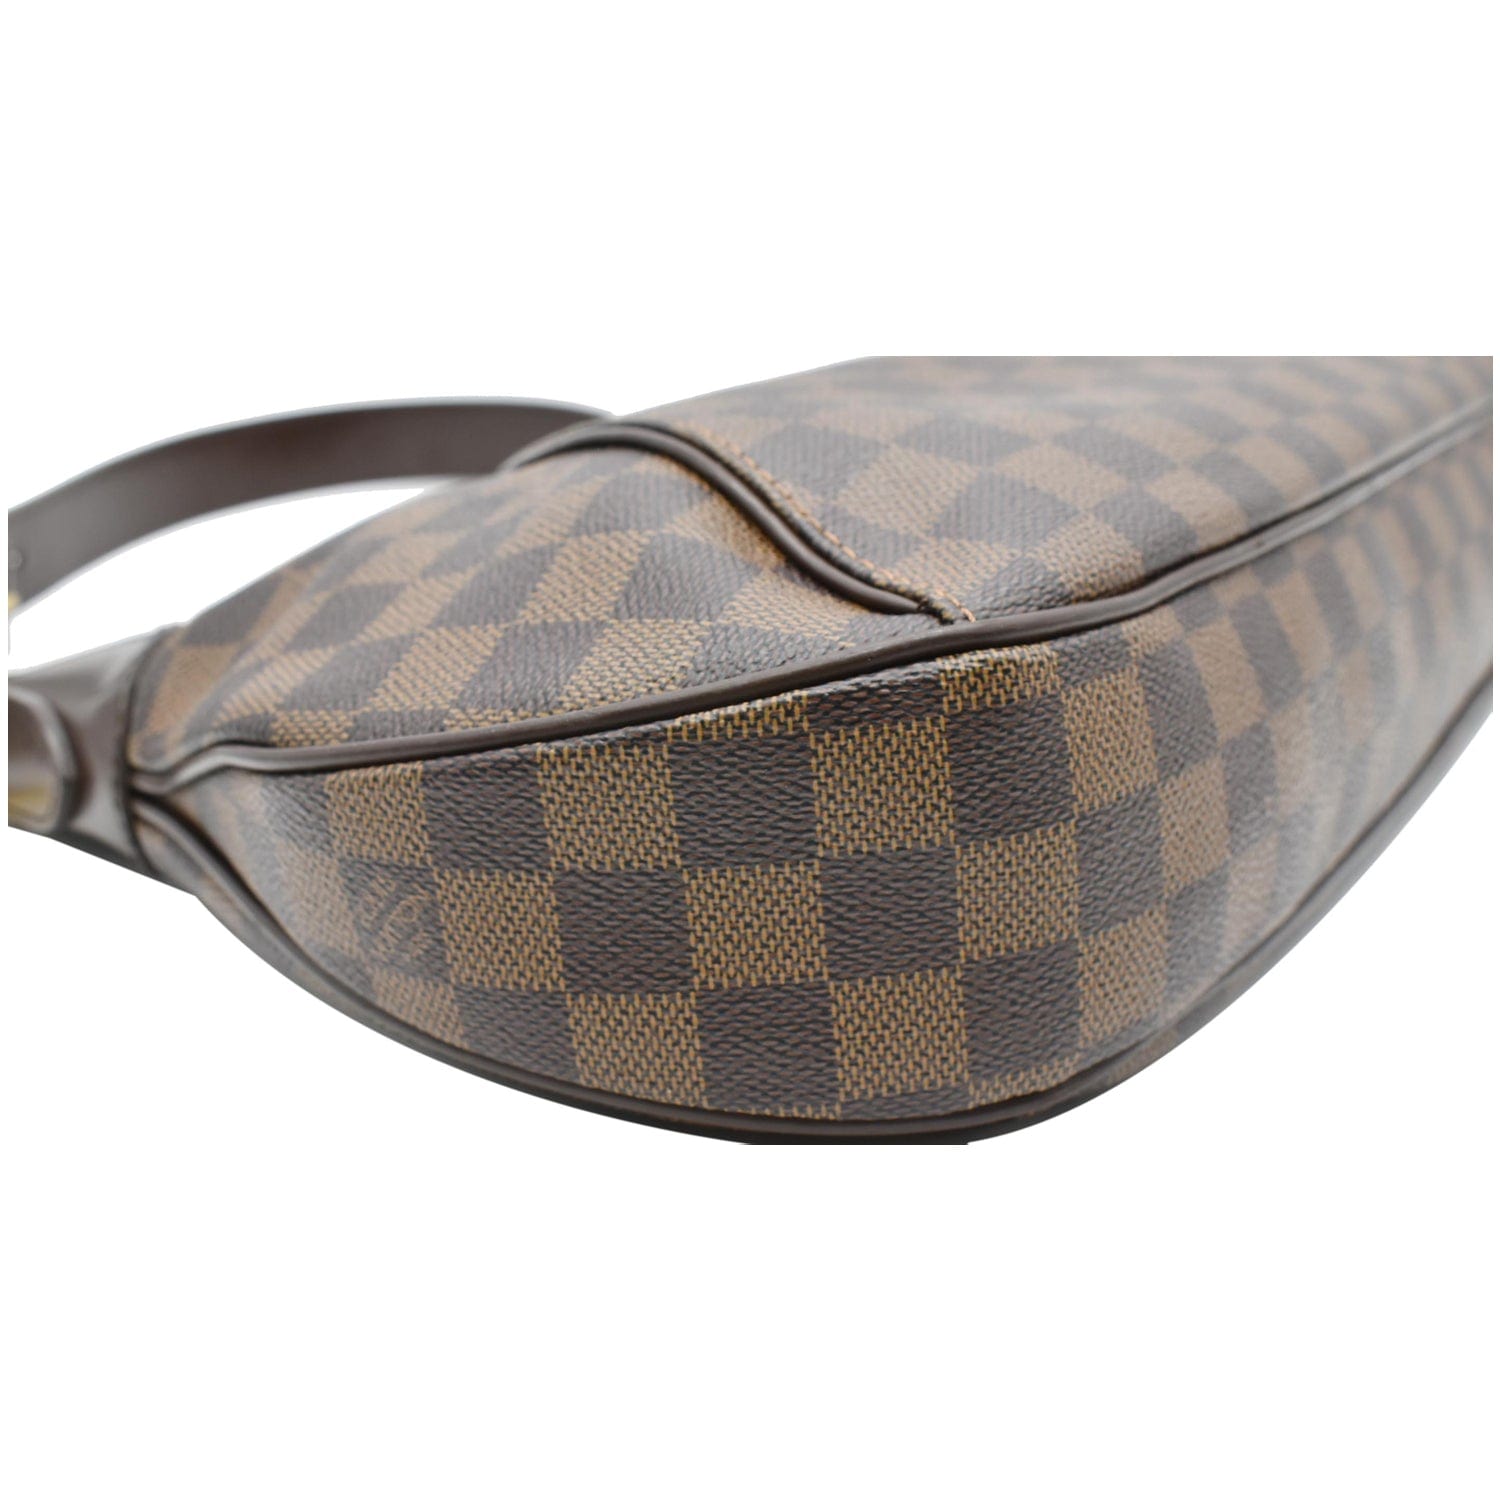 Thames cloth handbag Louis Vuitton Beige in Cloth - 32570749